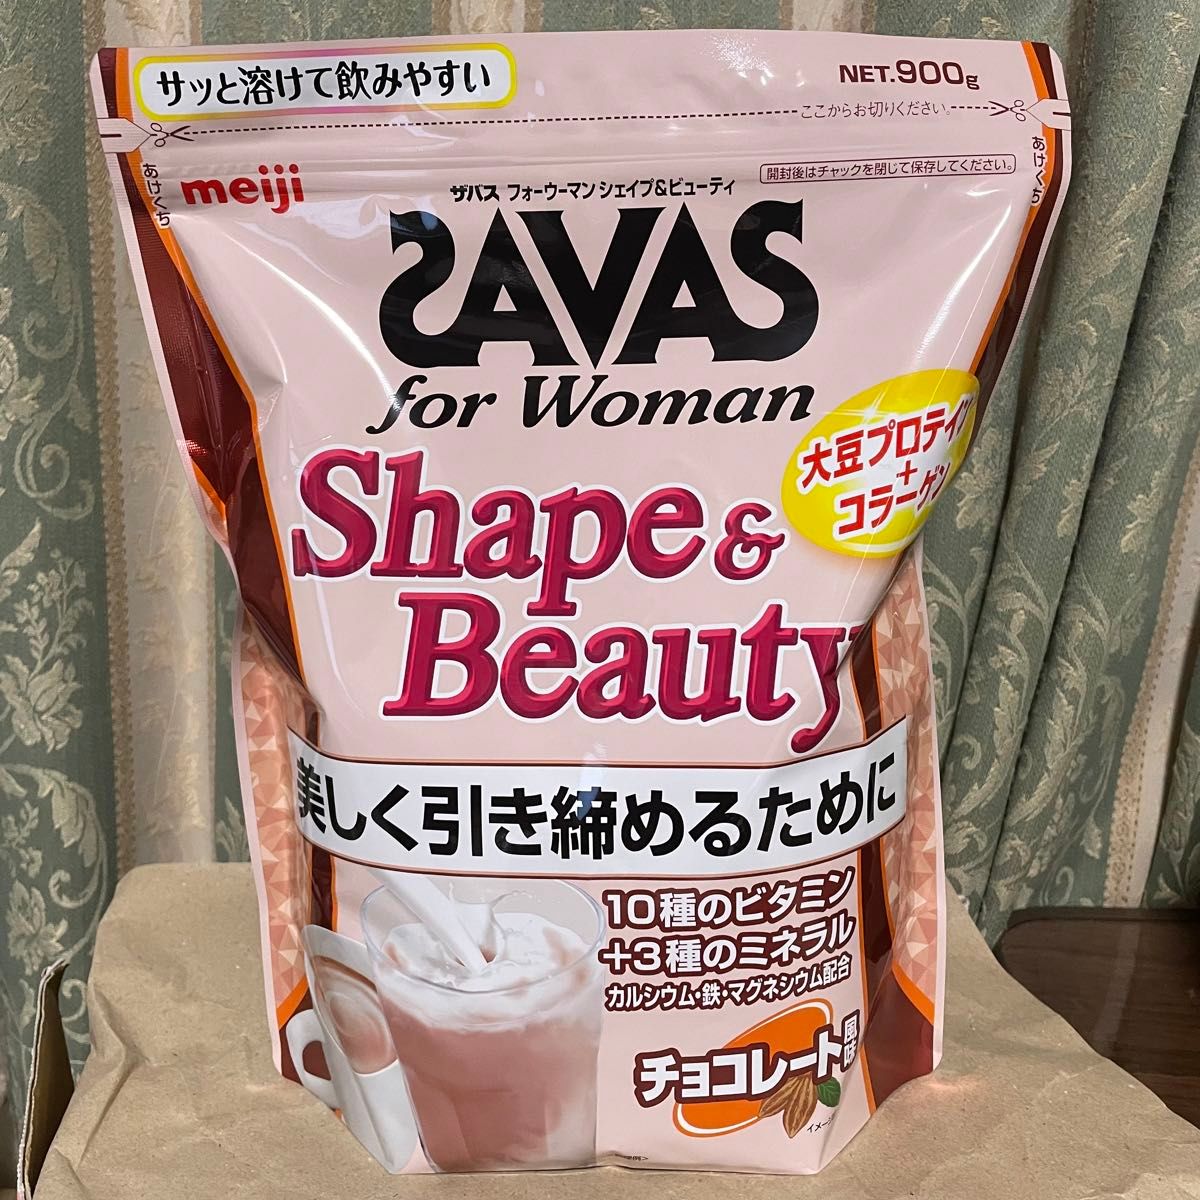 ザバス SAVAS for Woman シェイプ&ビューティ 900g ソイプロテイン チョコレート風味 コラーゲン ビタミン